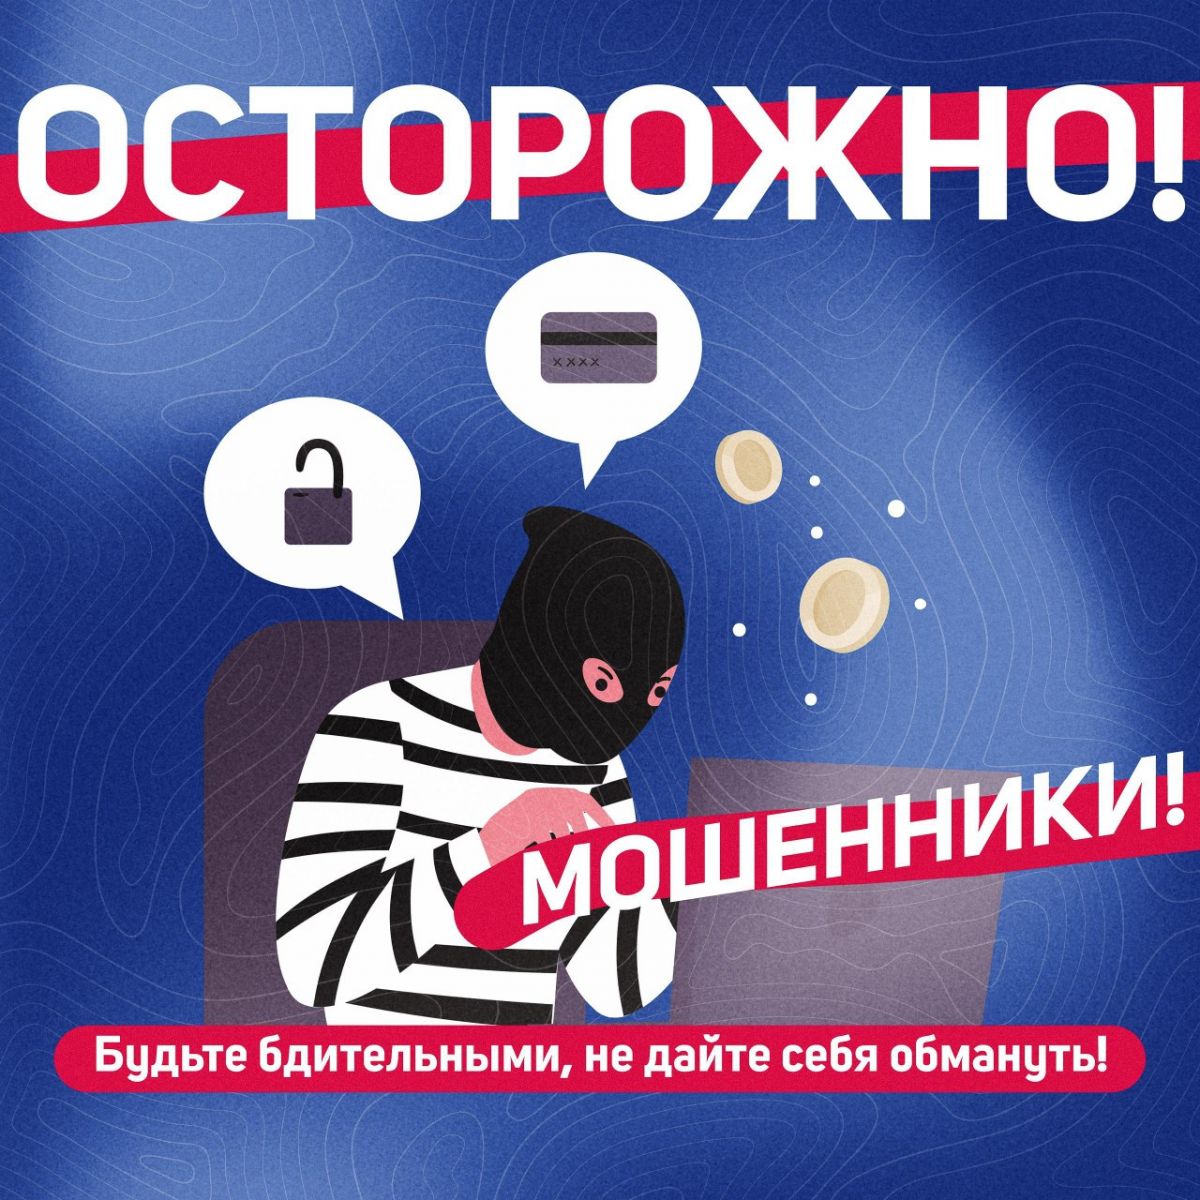 ГКУ «Социальная защита населения по Ардатовскому району РМ» сообщает, что участились случаи мошенничества!